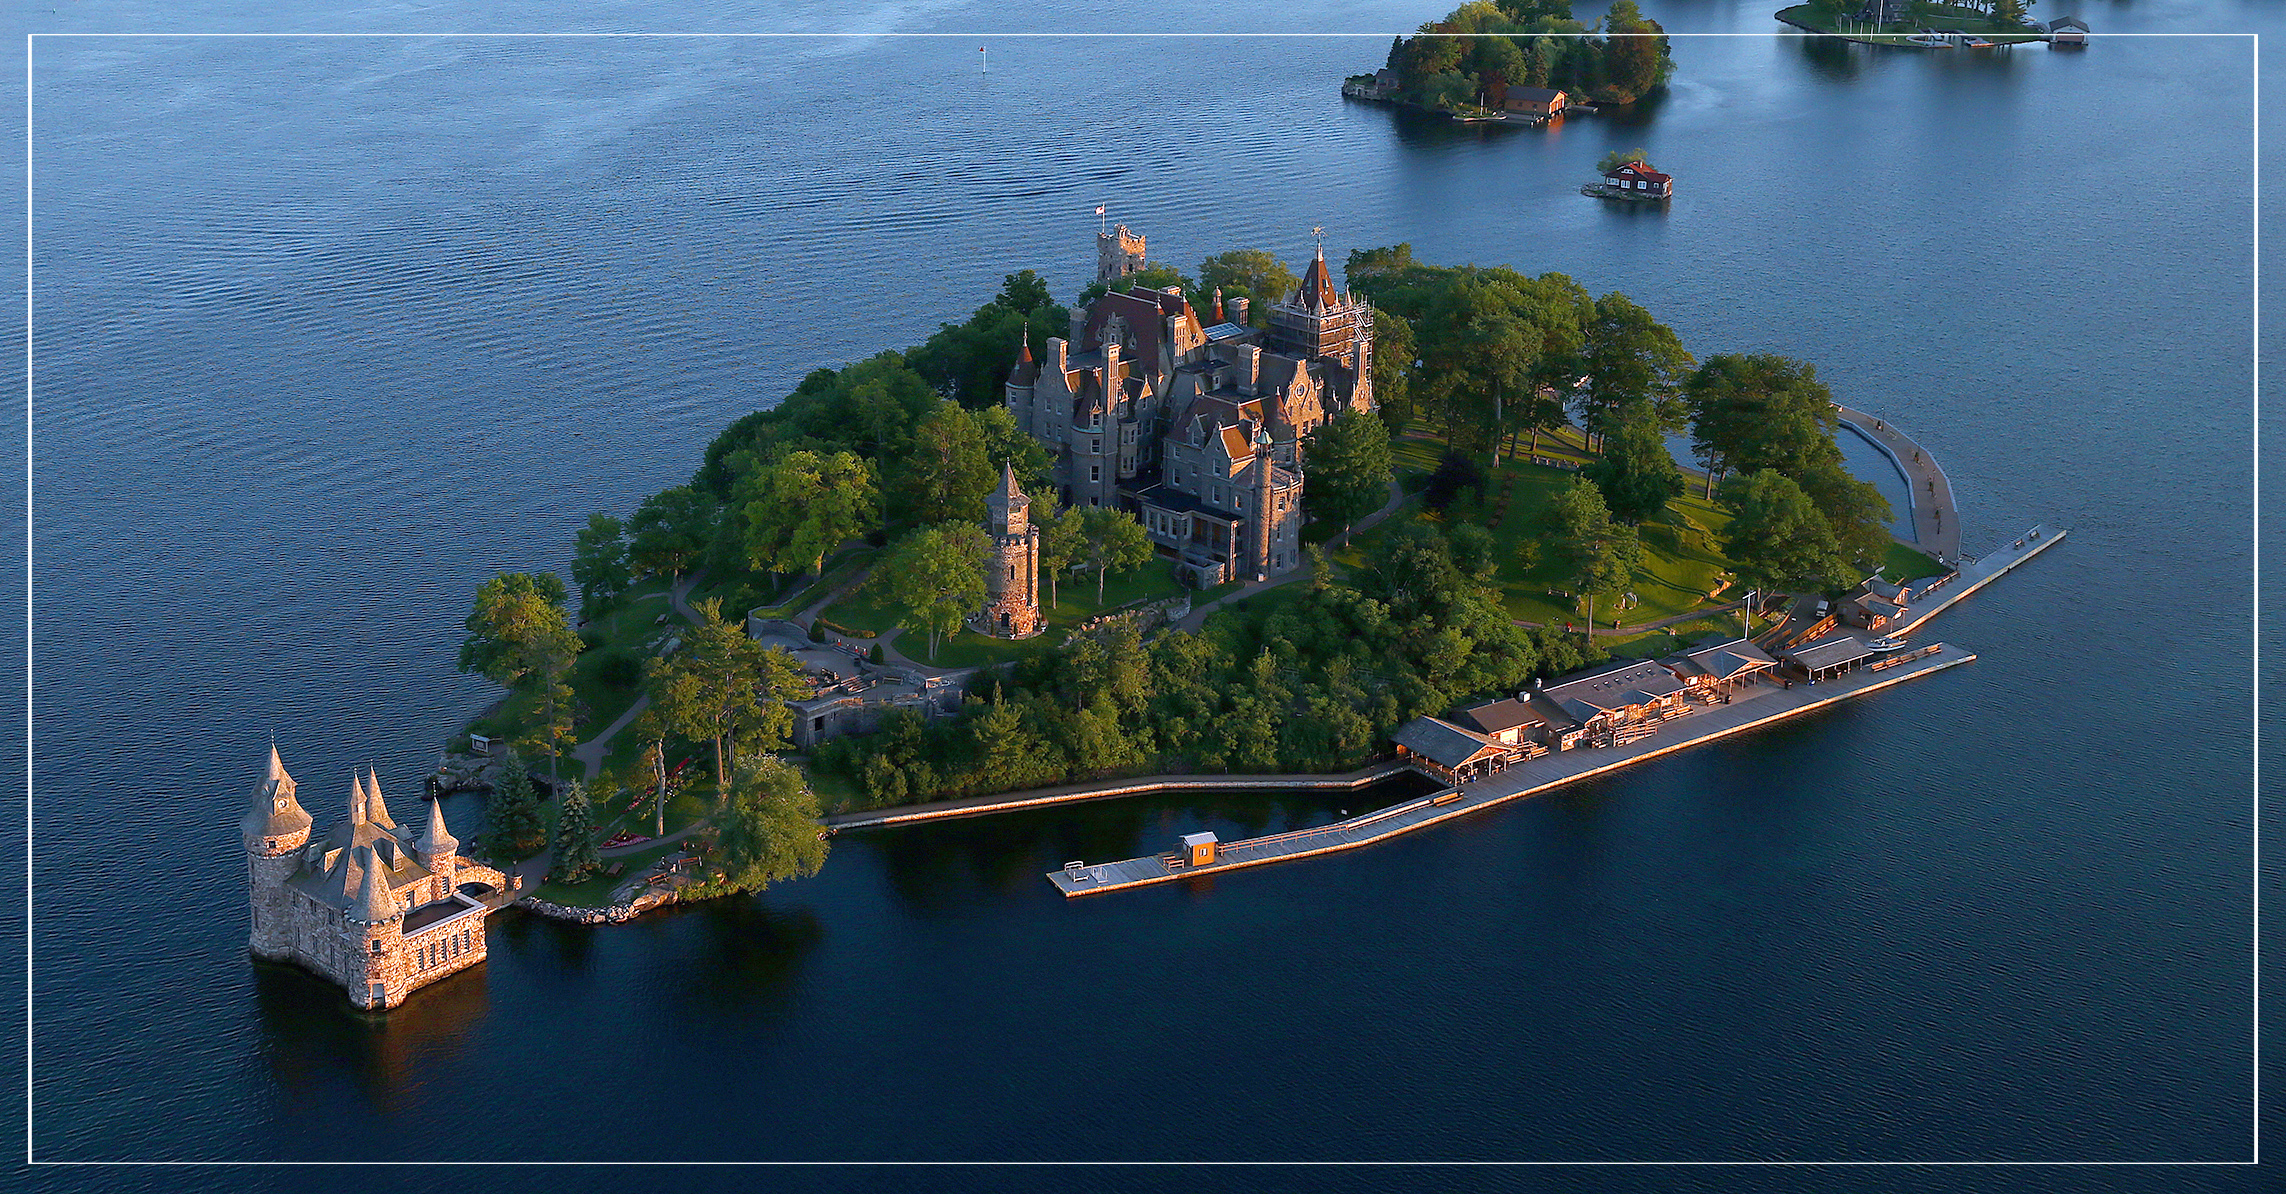 Четырех тысячах островов. Замок Больдта Харт Айленд. Замок Болдта (Boldt Castle) // тысяча островов (Онтарио). Канада замок Болдт. Остров Святого Лаврентия.